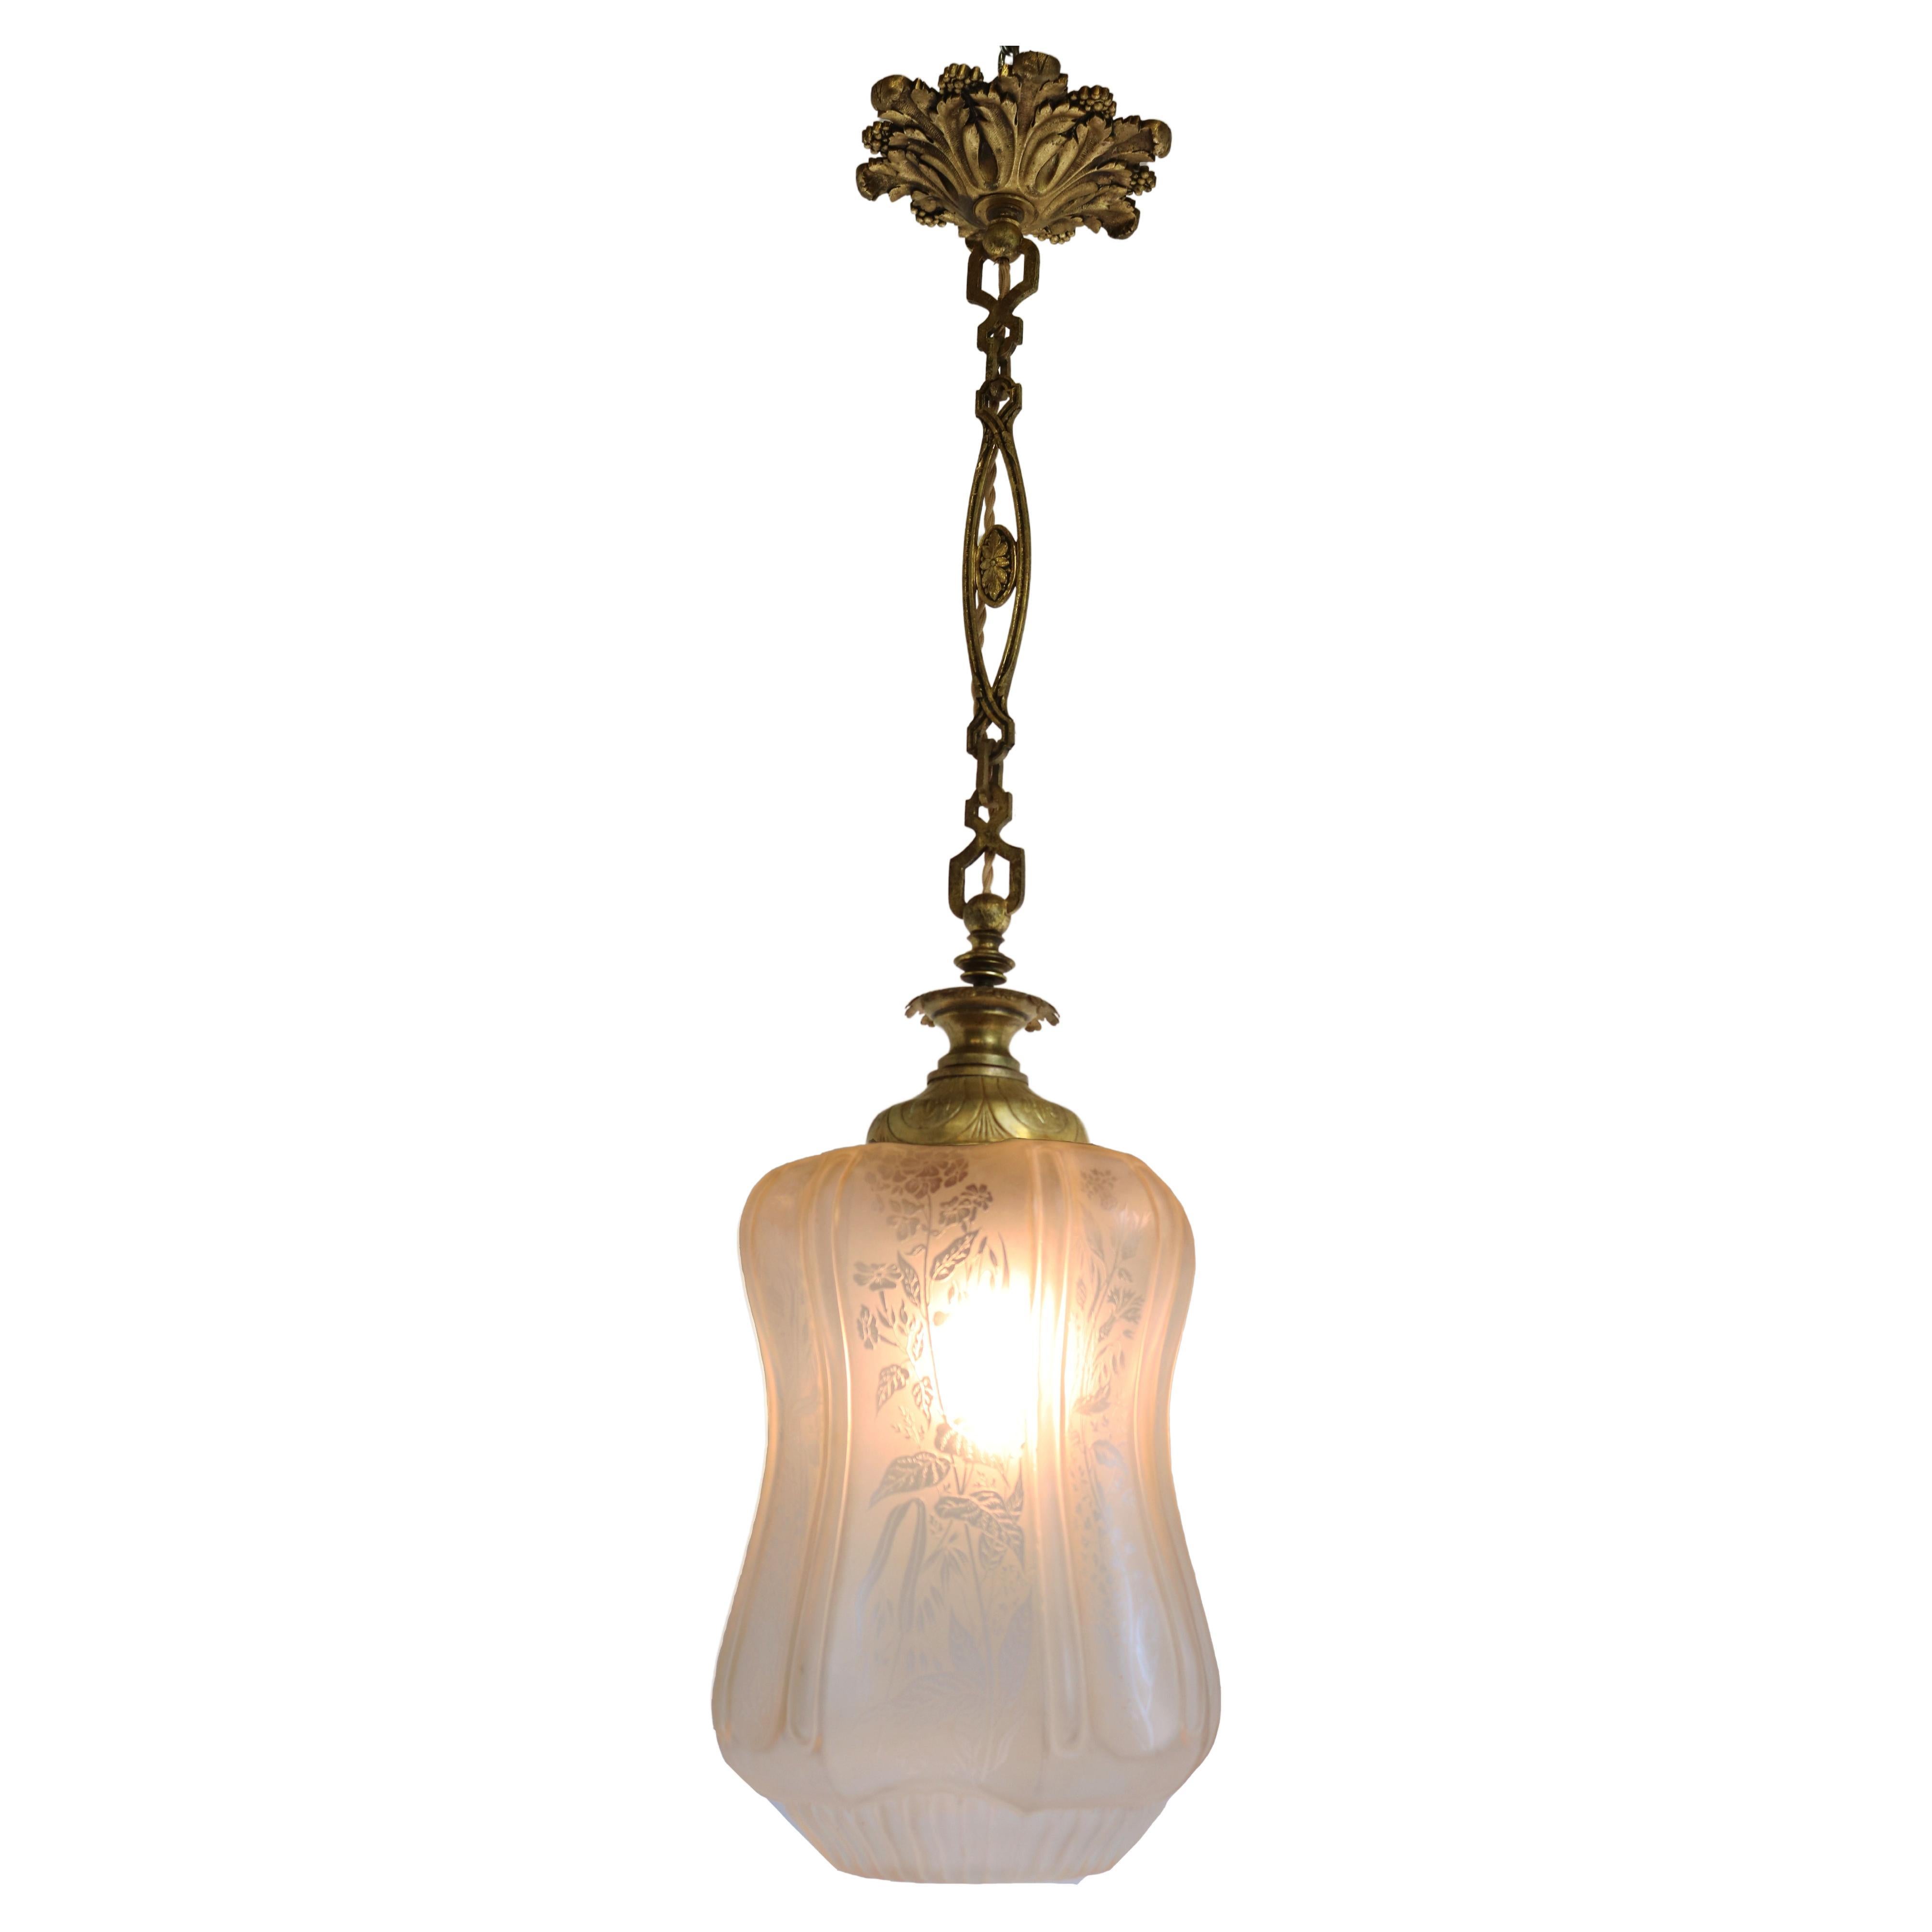 Large Antique French Art Nouveau Pedant Light 1910 Floral Glass Light Chandelier For Sale